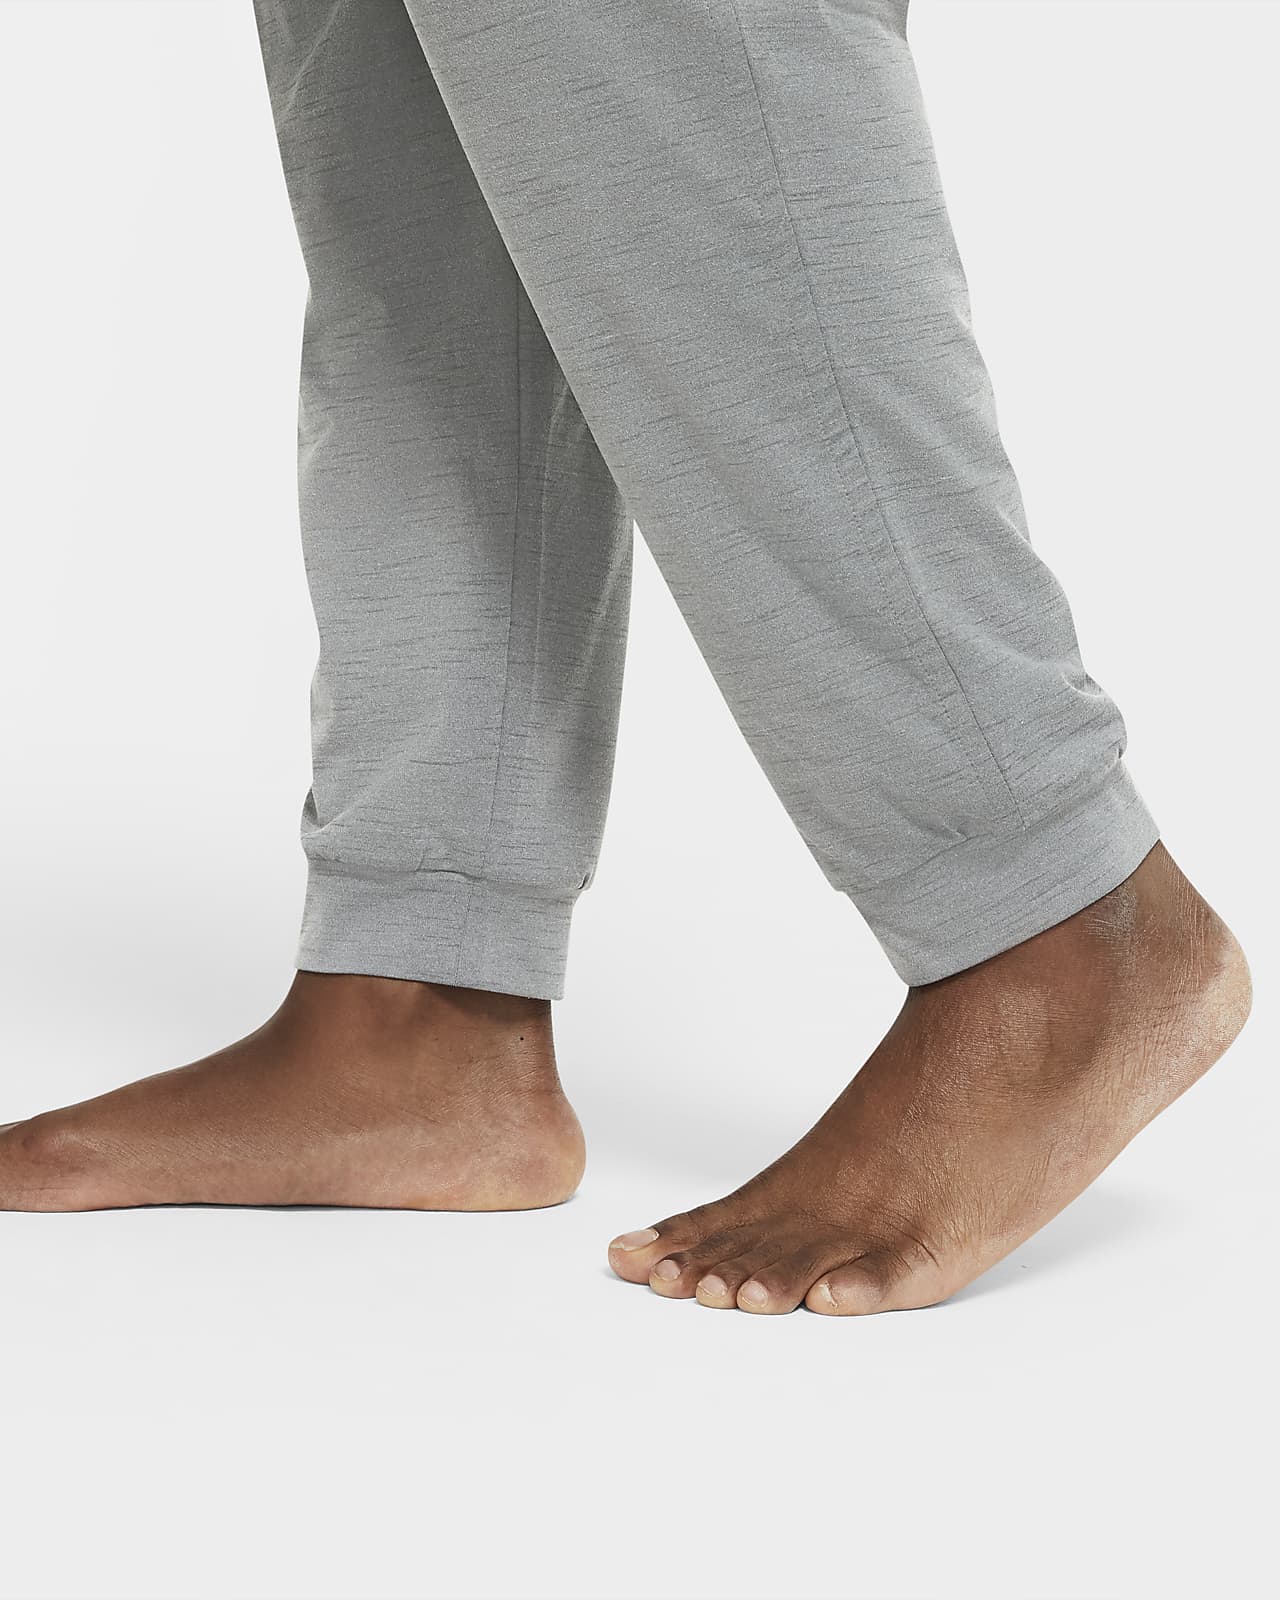 Nike Dri-FIT Men's Yoga Pants Size XL Tall (Green/Heather) AT5696